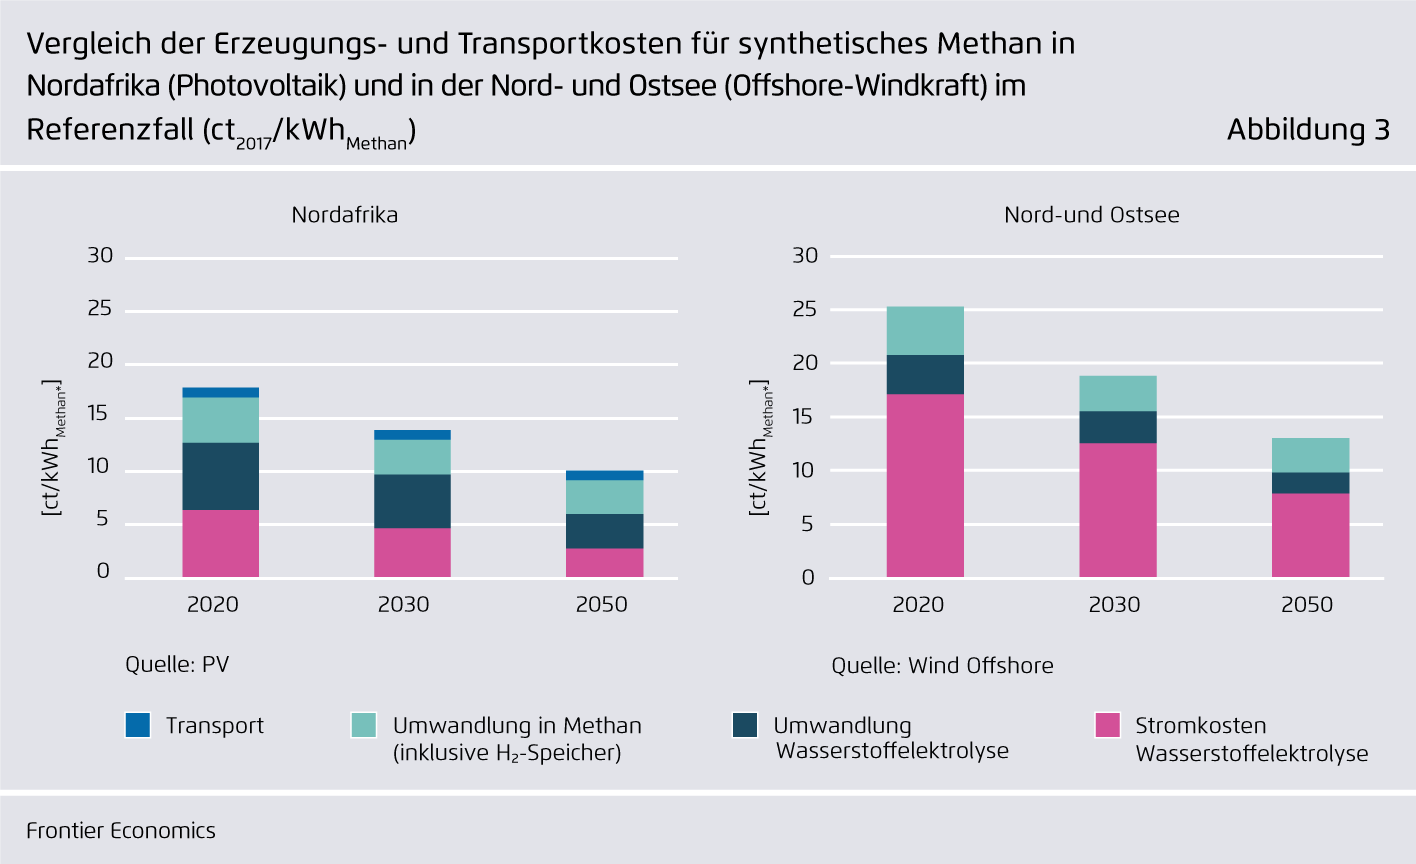 Preview for Vergleich der Erzeugungs- und Transportkosten für synthetisches Methan in Nordafrika (Photovoltaik) und in der Nord- und Ostsee (Offshore-Windkraft) im Referenzfall (ct2017/kWhMethan)